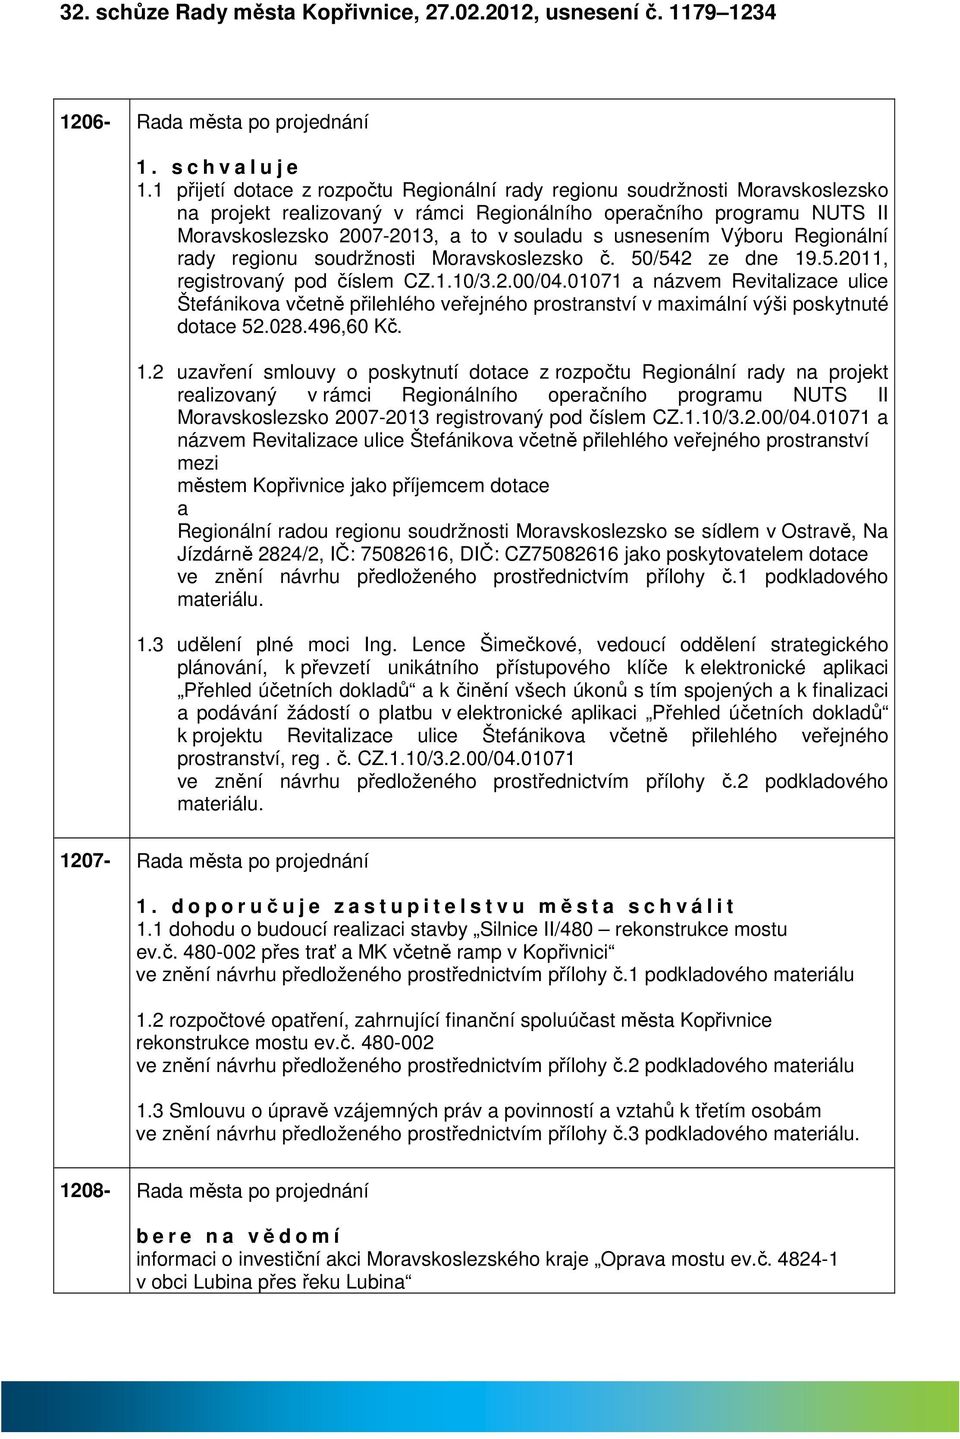 Výboru Regionální rdy regionu soudržnosti Morvskoslezsko č. 50/542 ze dne 19.5.2011, registrovný pod číslem CZ.1.10/3.2.00/04.